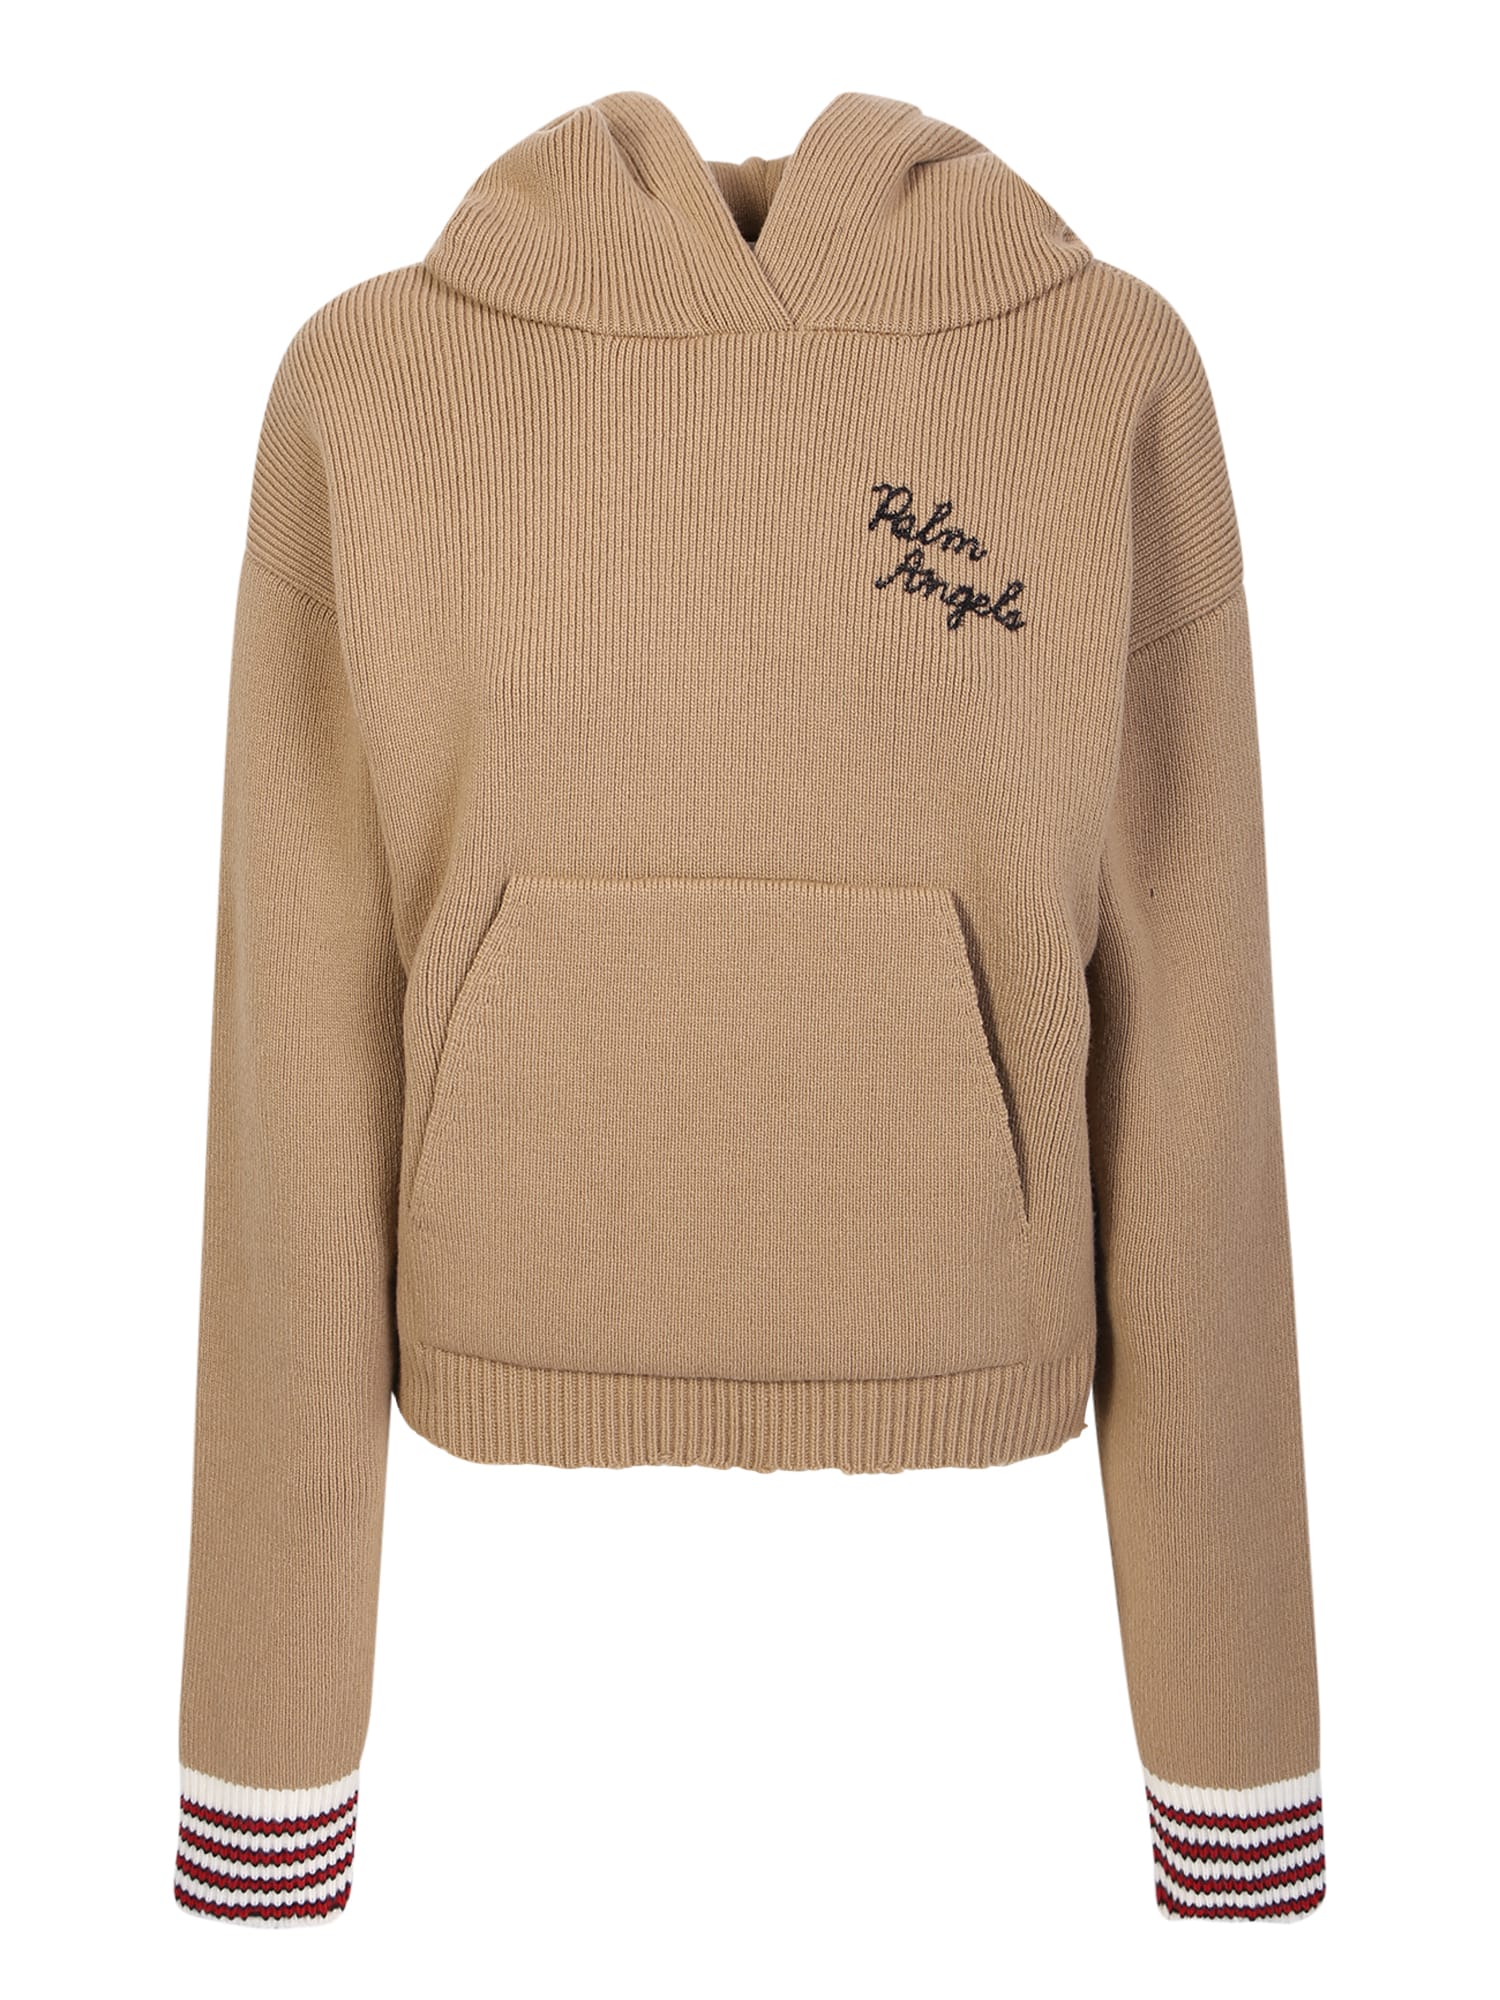 Palm Angels Brown/black Hooded Sweatshirt